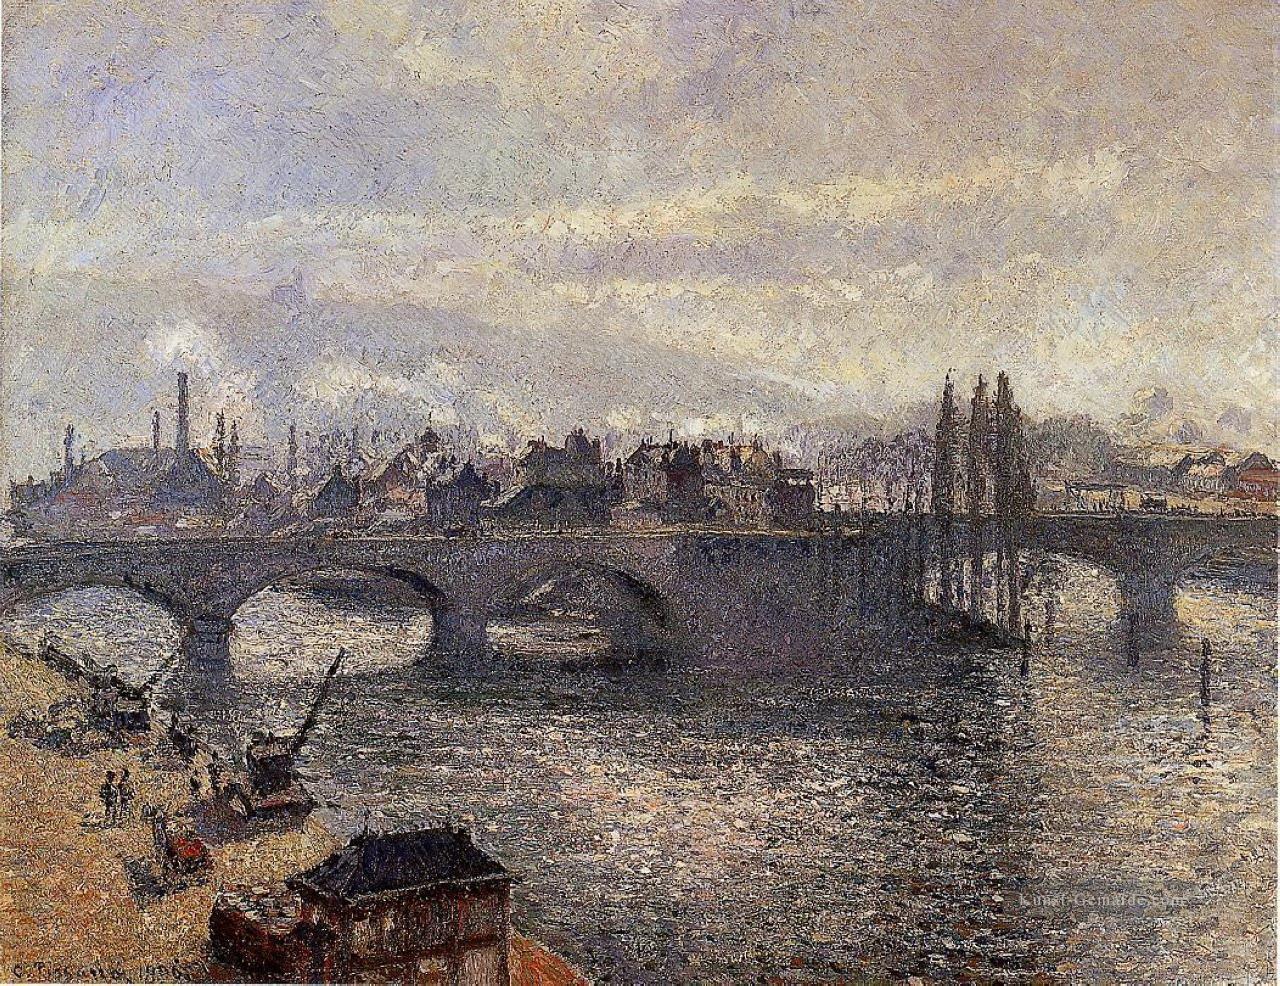 Corneille der pont rouen Morgen Wirkung 1896 Camille Pissarro Ölgemälde